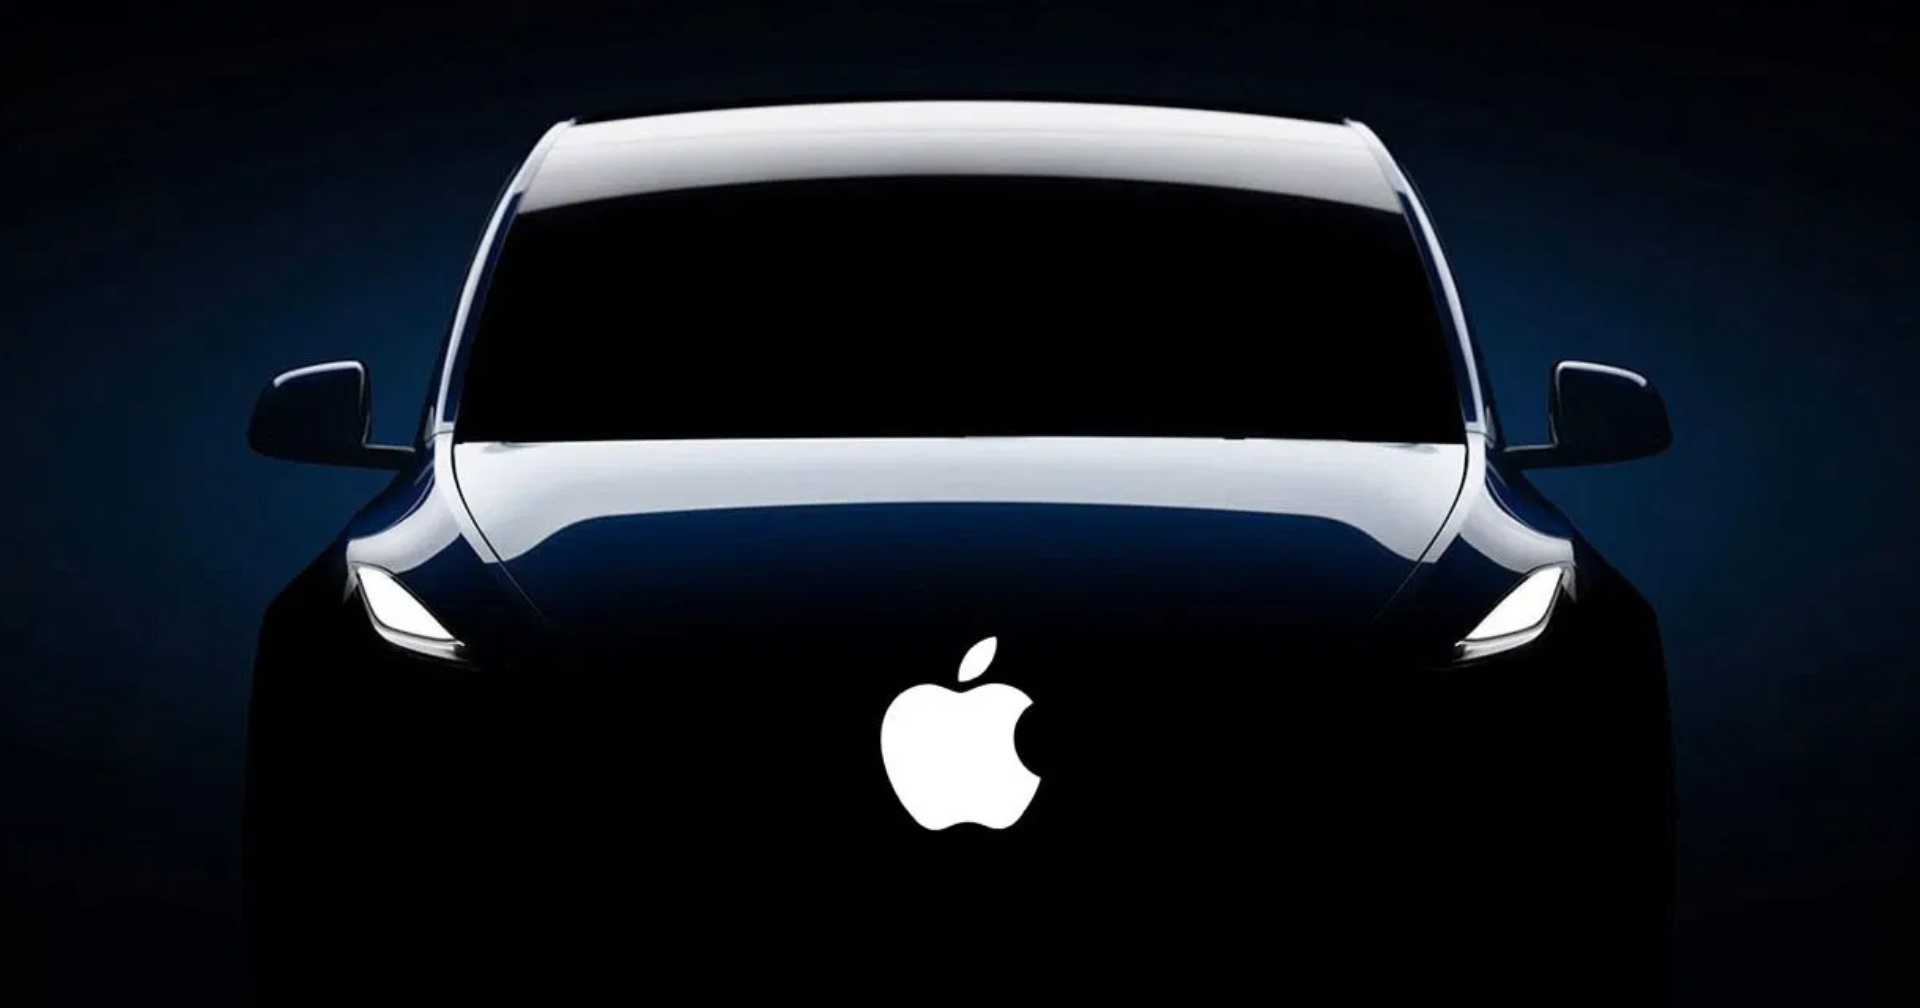 ล่ม! สื่อรายงาน Apple ถอดใจ หยุดพัฒนารถยนต์ไฟฟ้าของตัวเองแล้ว